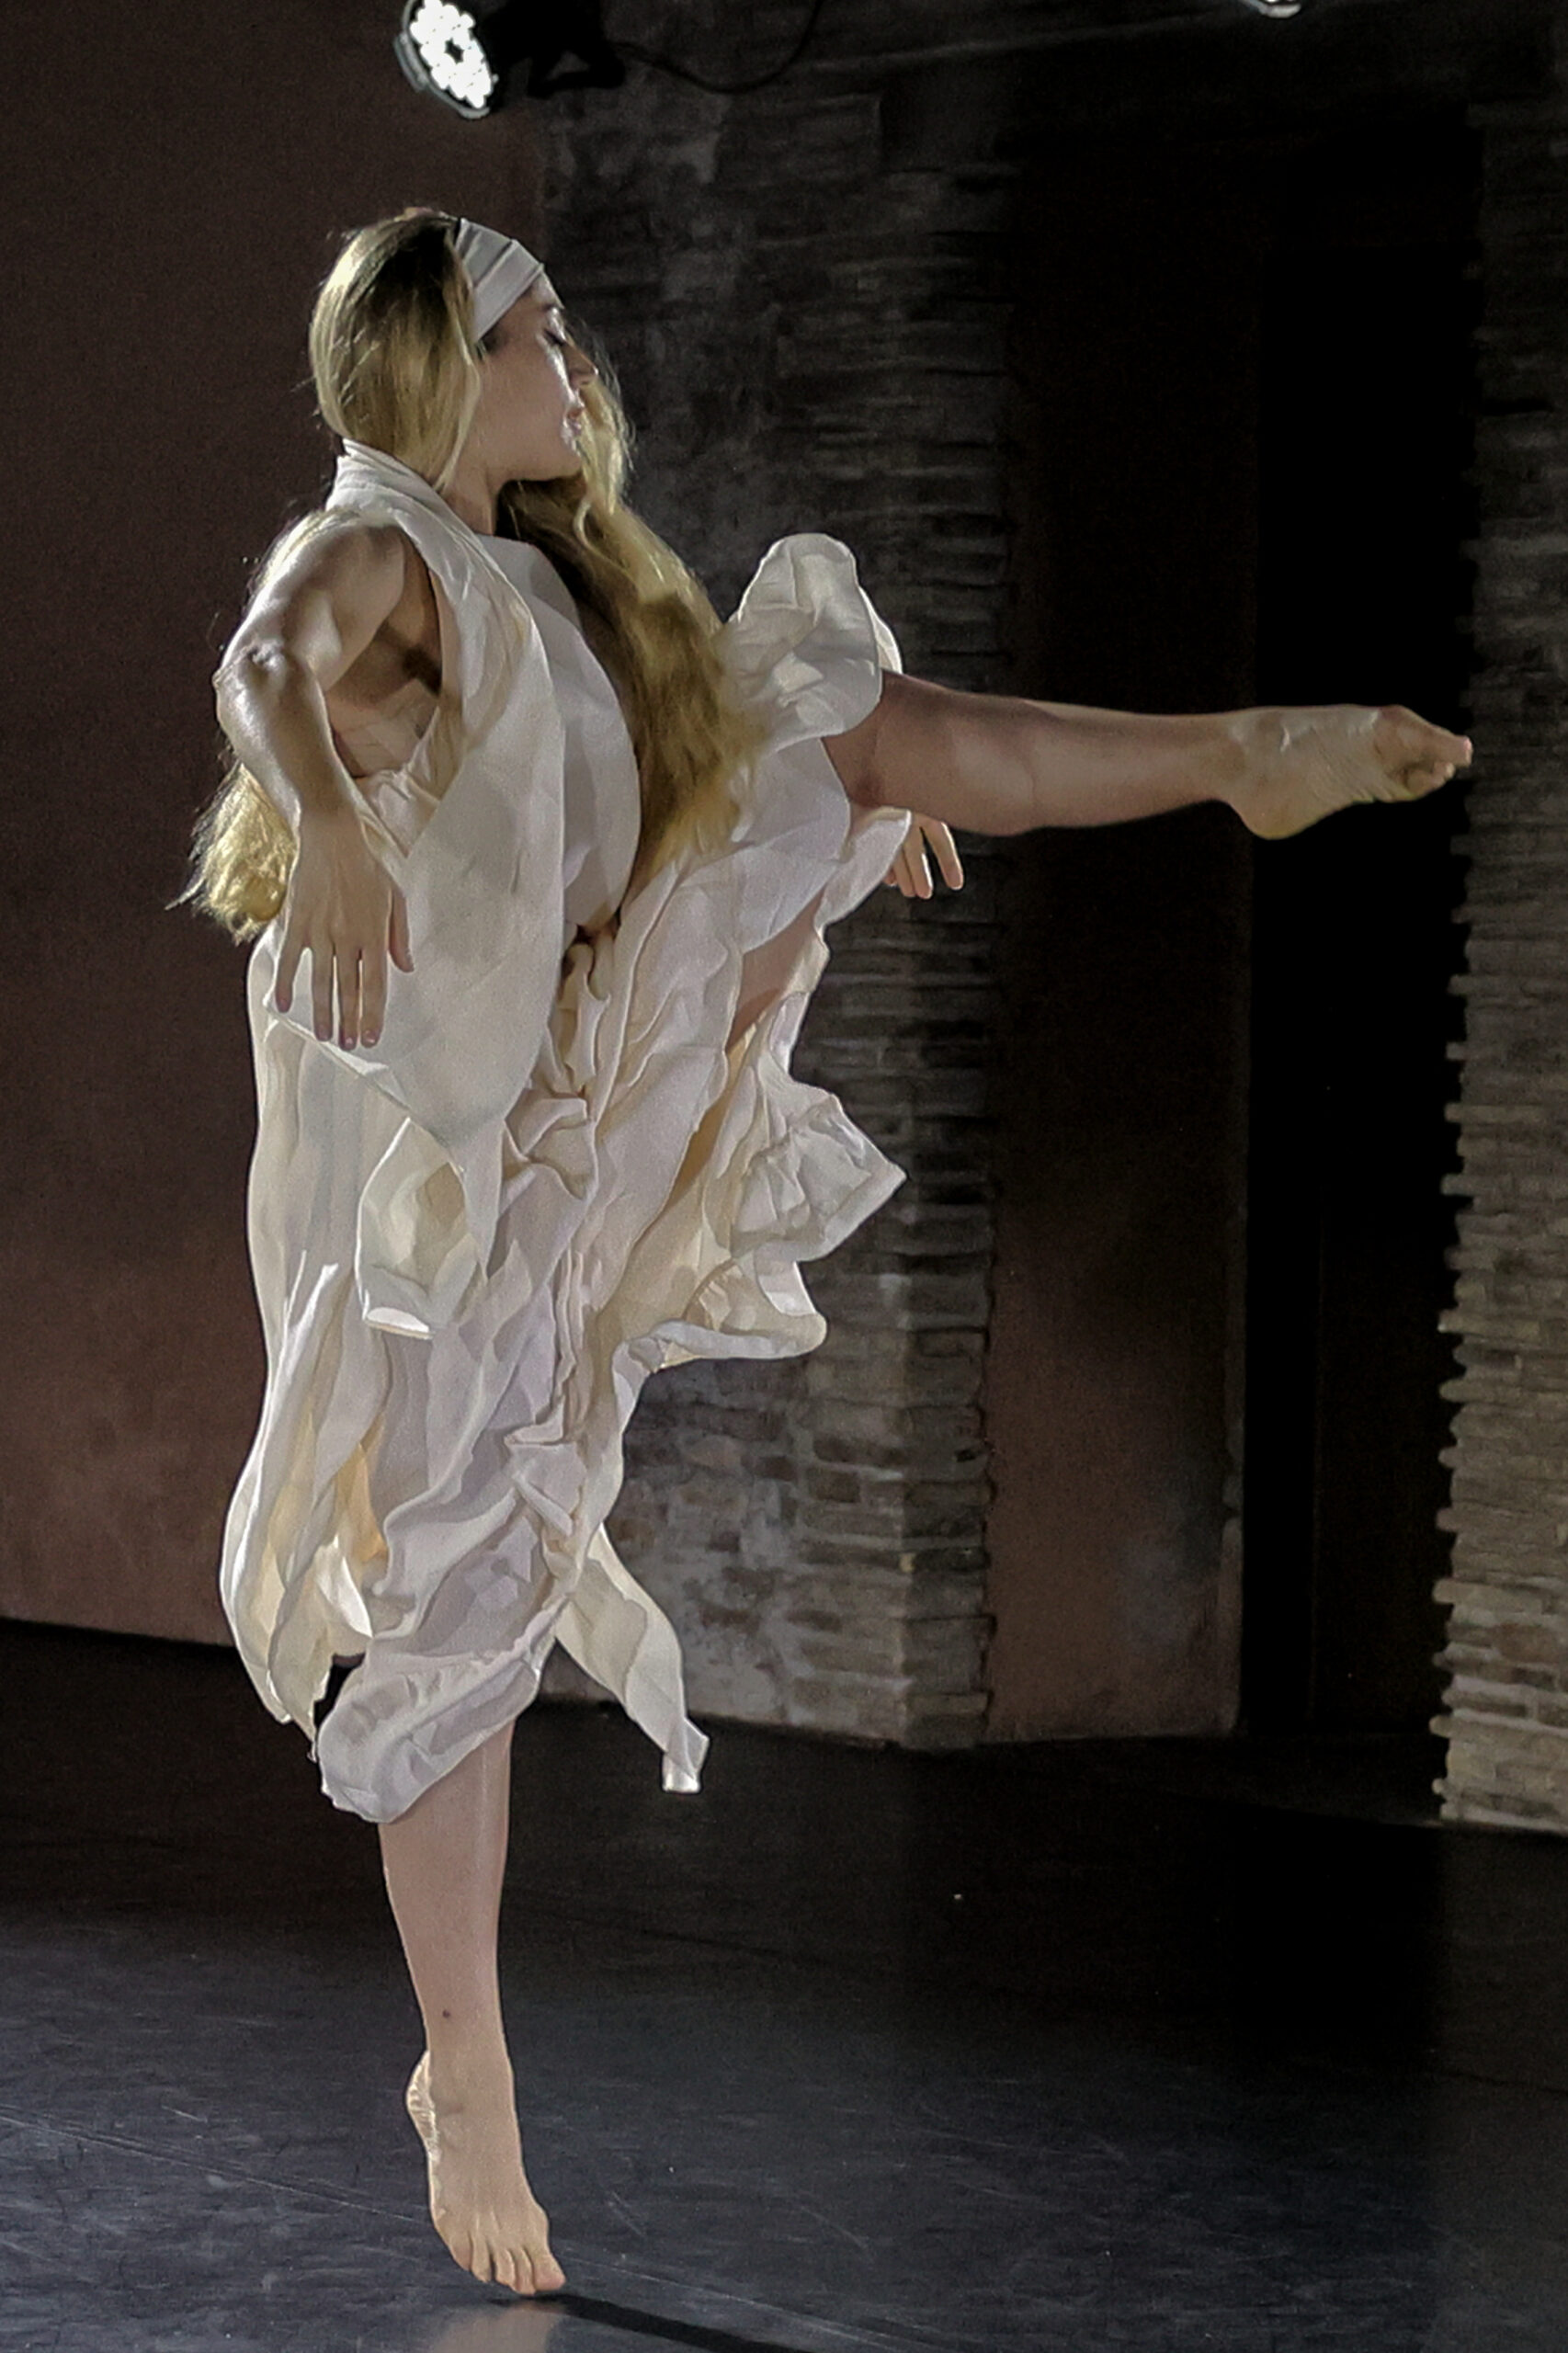 Erica Modotti durante l’esecuzione dell’assolo “Giuditta e Oloferne” film di Baldassarre Negroni (1928), coreografia Jia Ruskaja ricostruita da Chiara Zoppolato, costumi di Simone Martinelli.